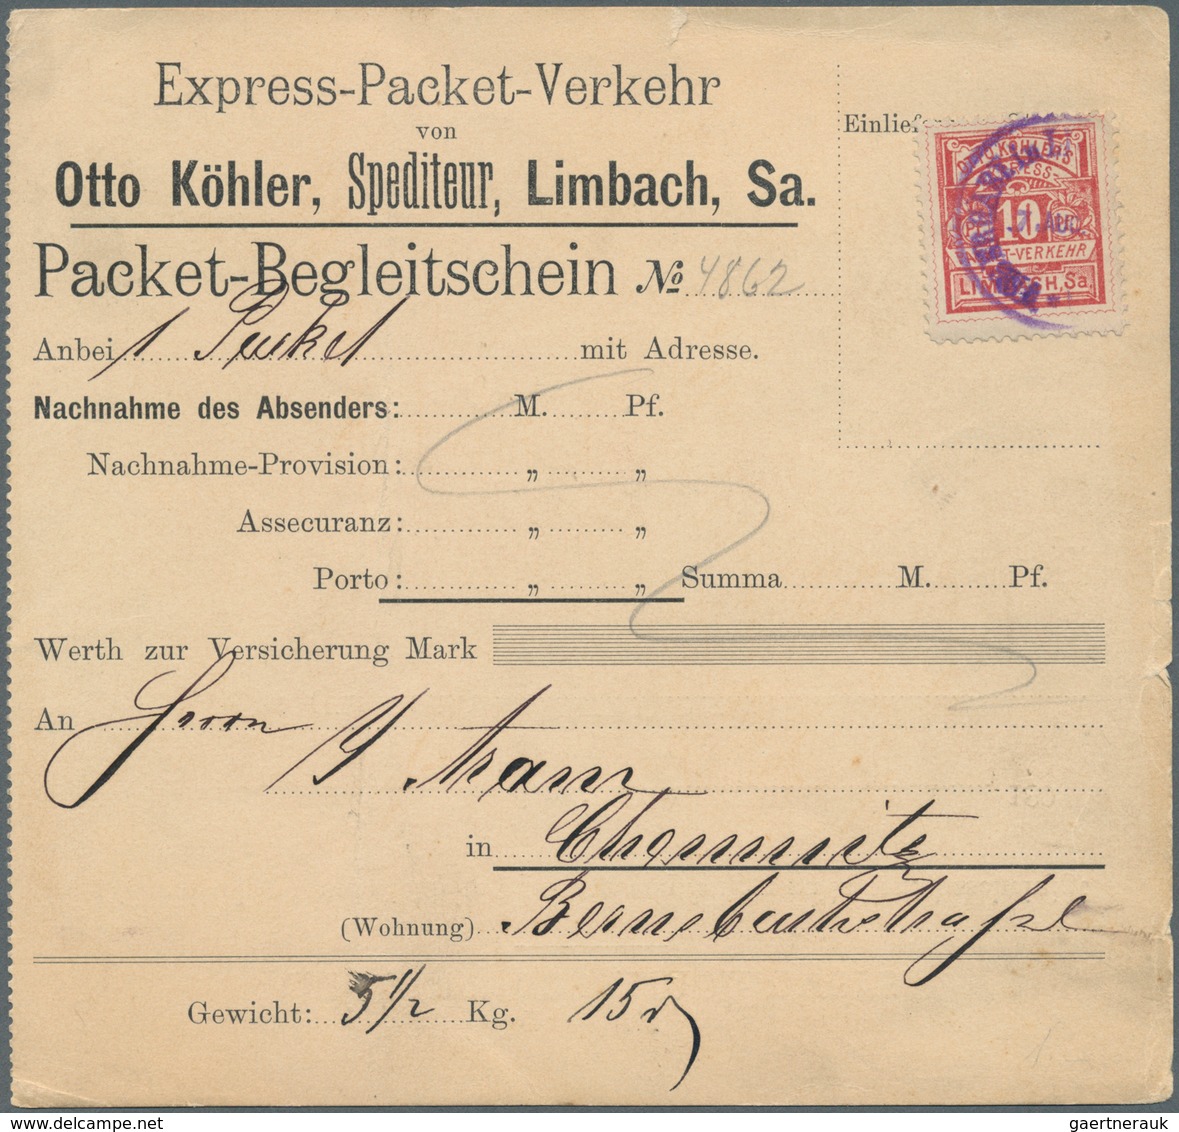 18309 Deutsches Reich - Privatpost (Stadtpost): 1891, LIMBACH Sa., Express-Packet-Verkehr Otto Köhler: 10 - Private & Local Mails